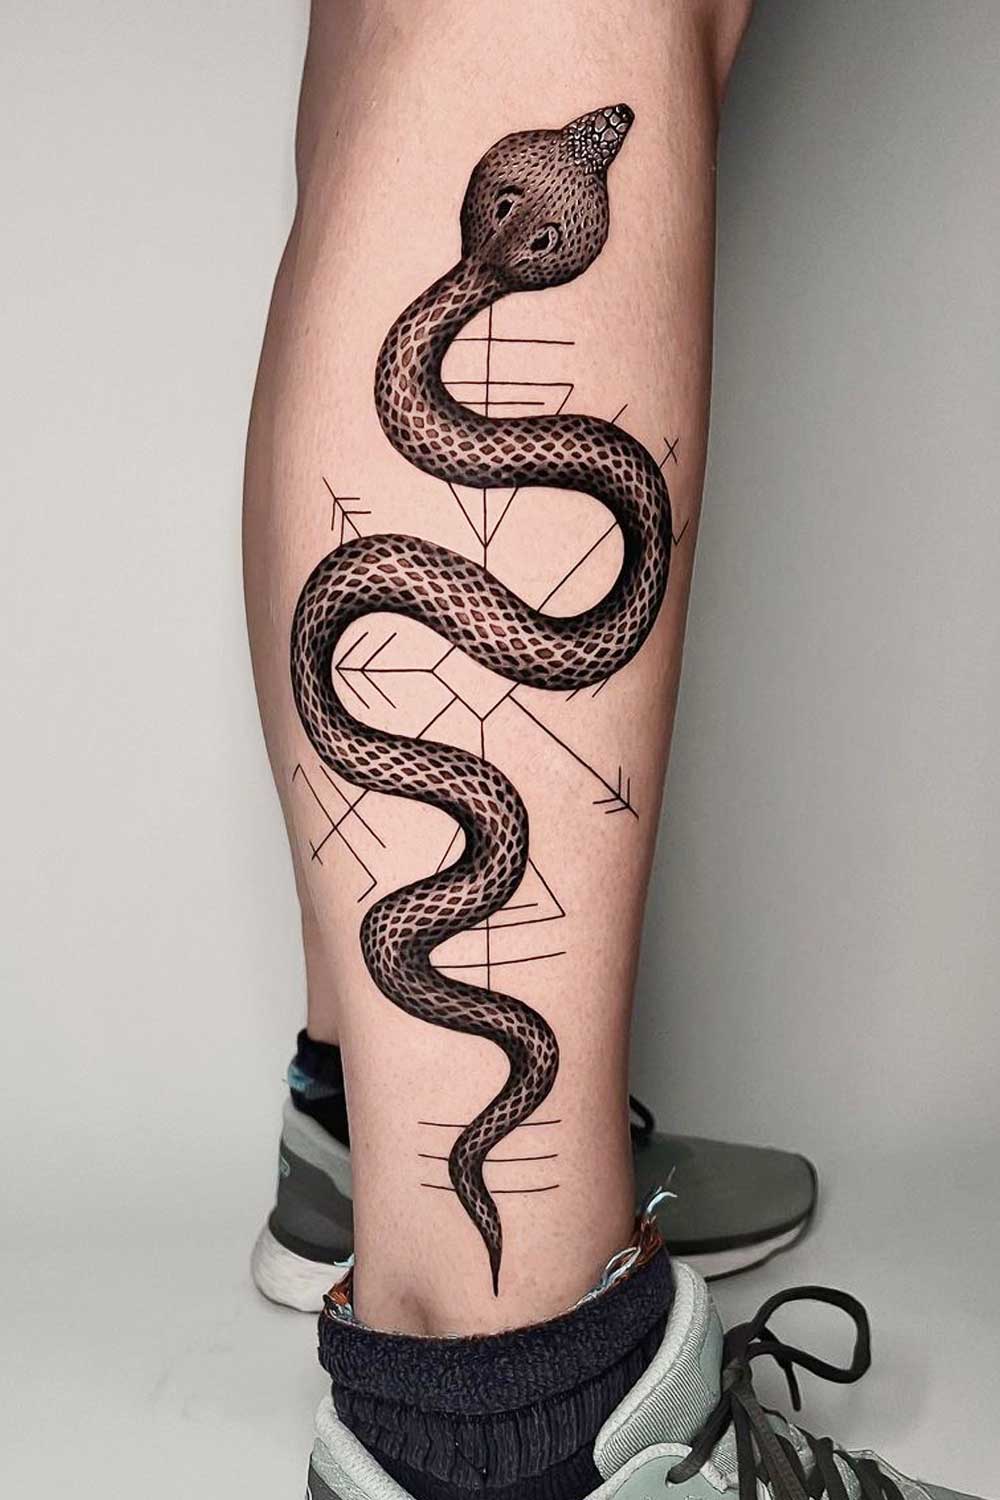 Snake Tattoo for Leg